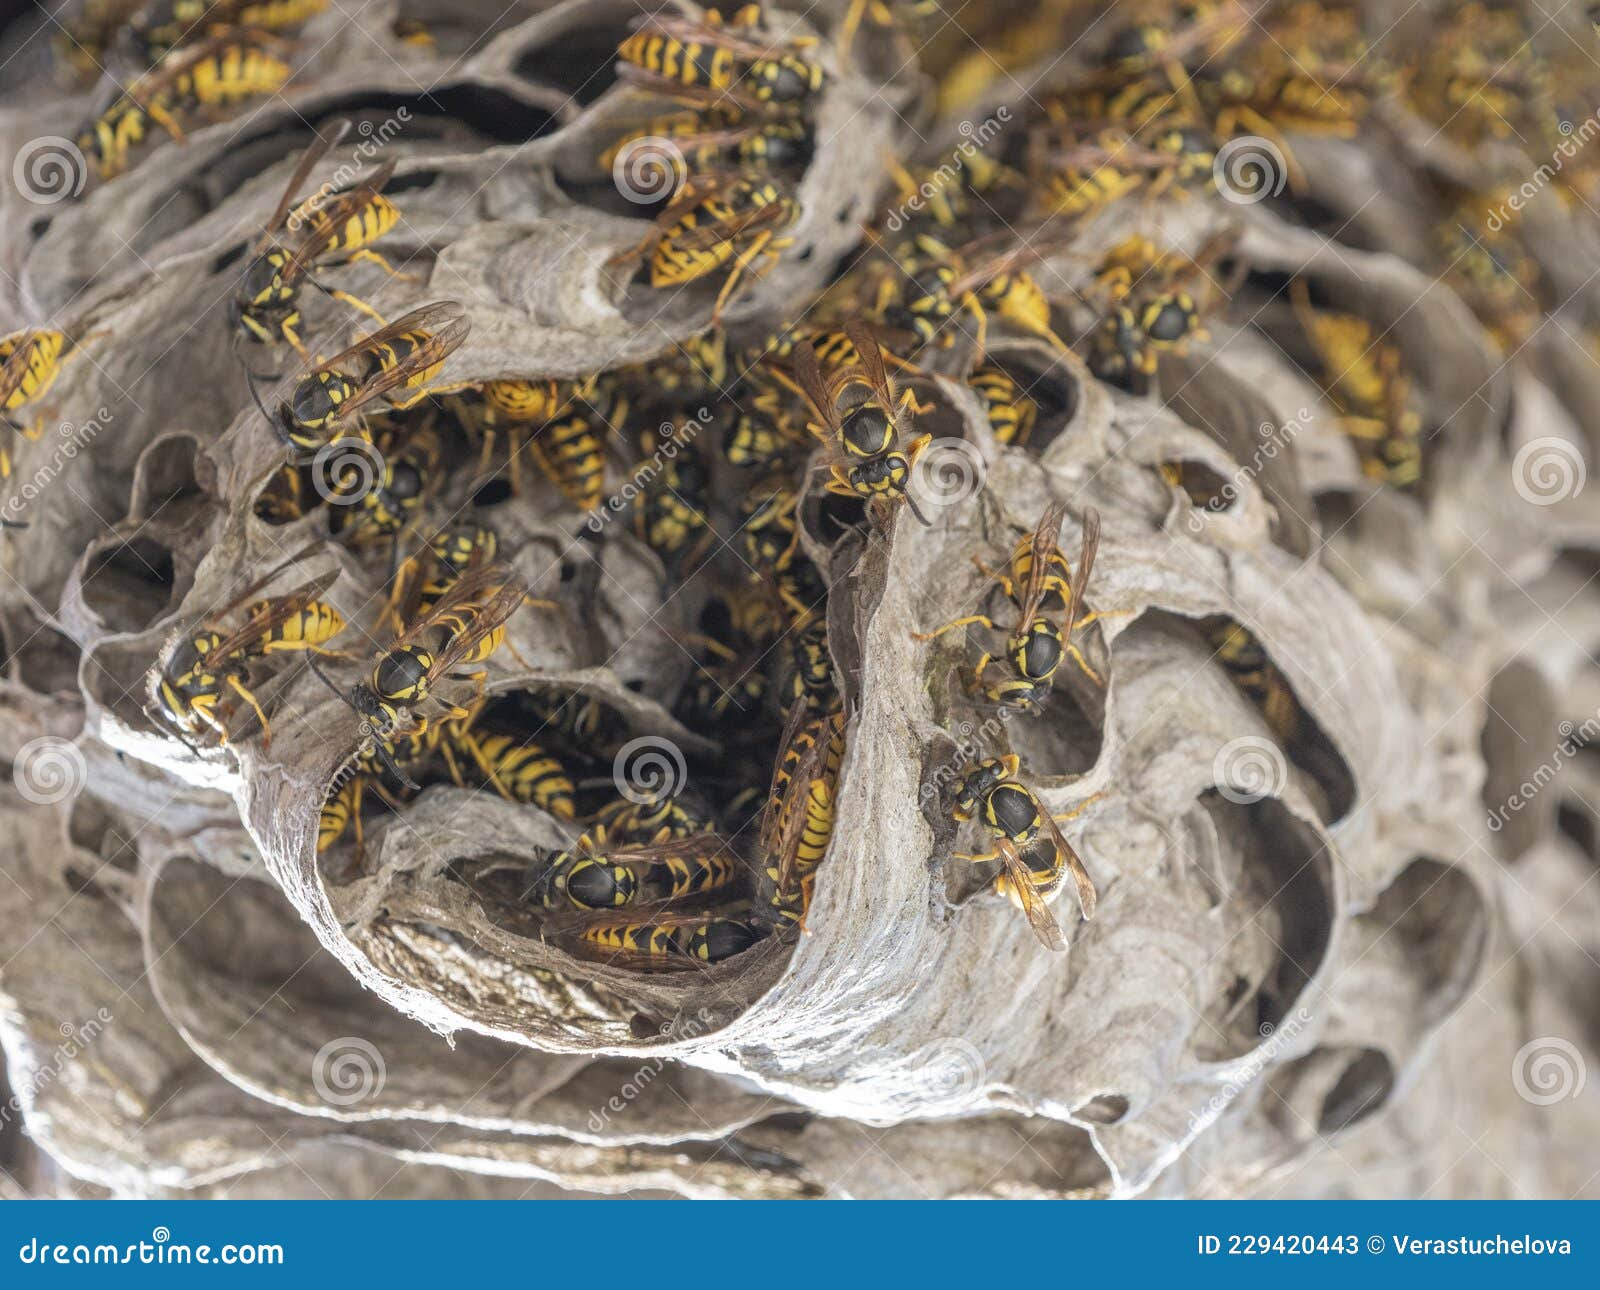 a wasp nest vespula vulgaris